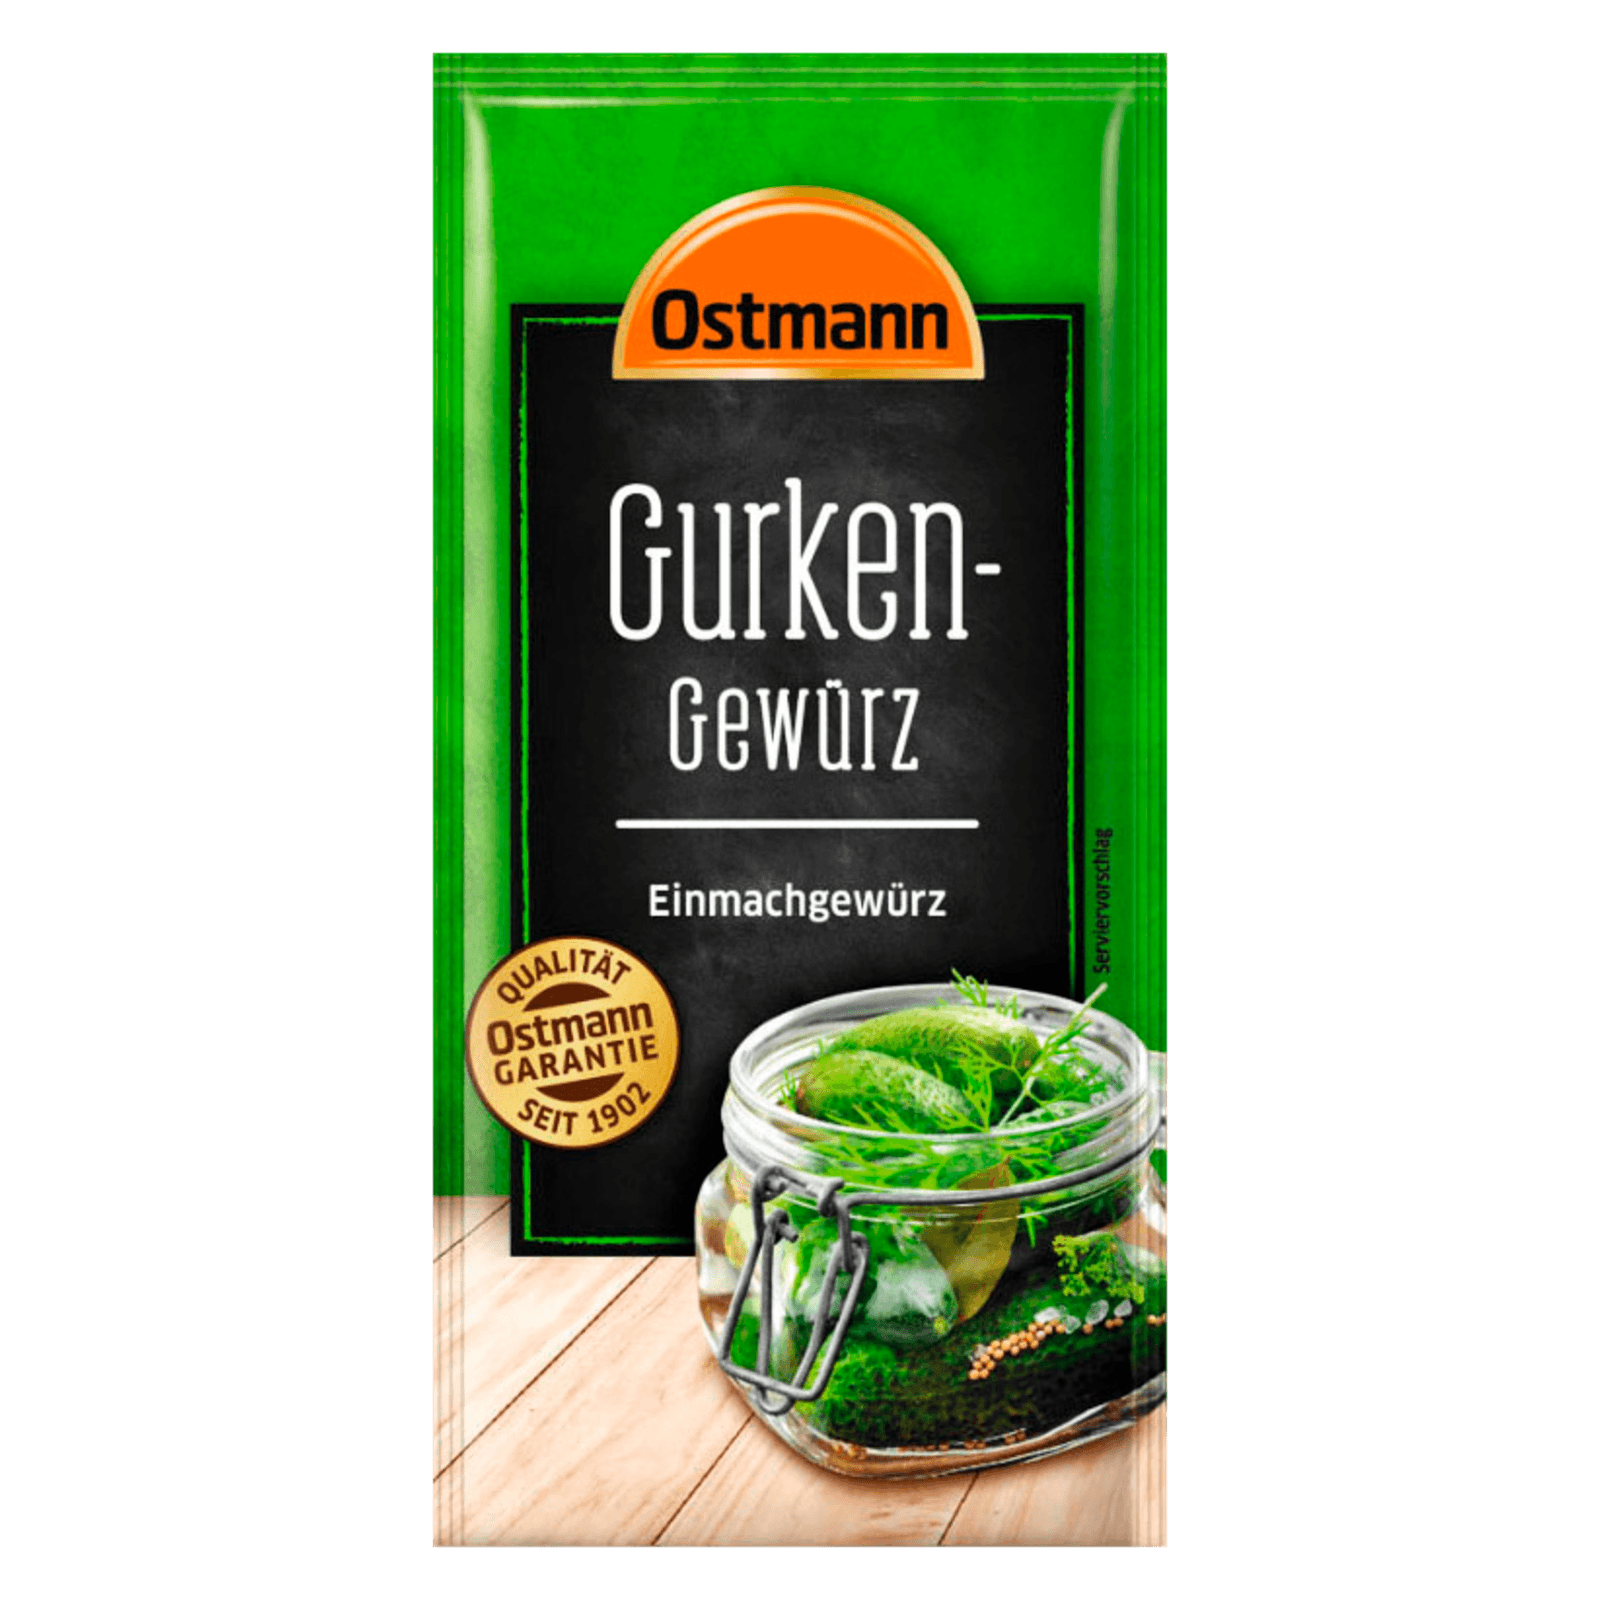 Ostmann Gurken-Gewürz Einmachgewürz 30g bei REWE online bestellen!